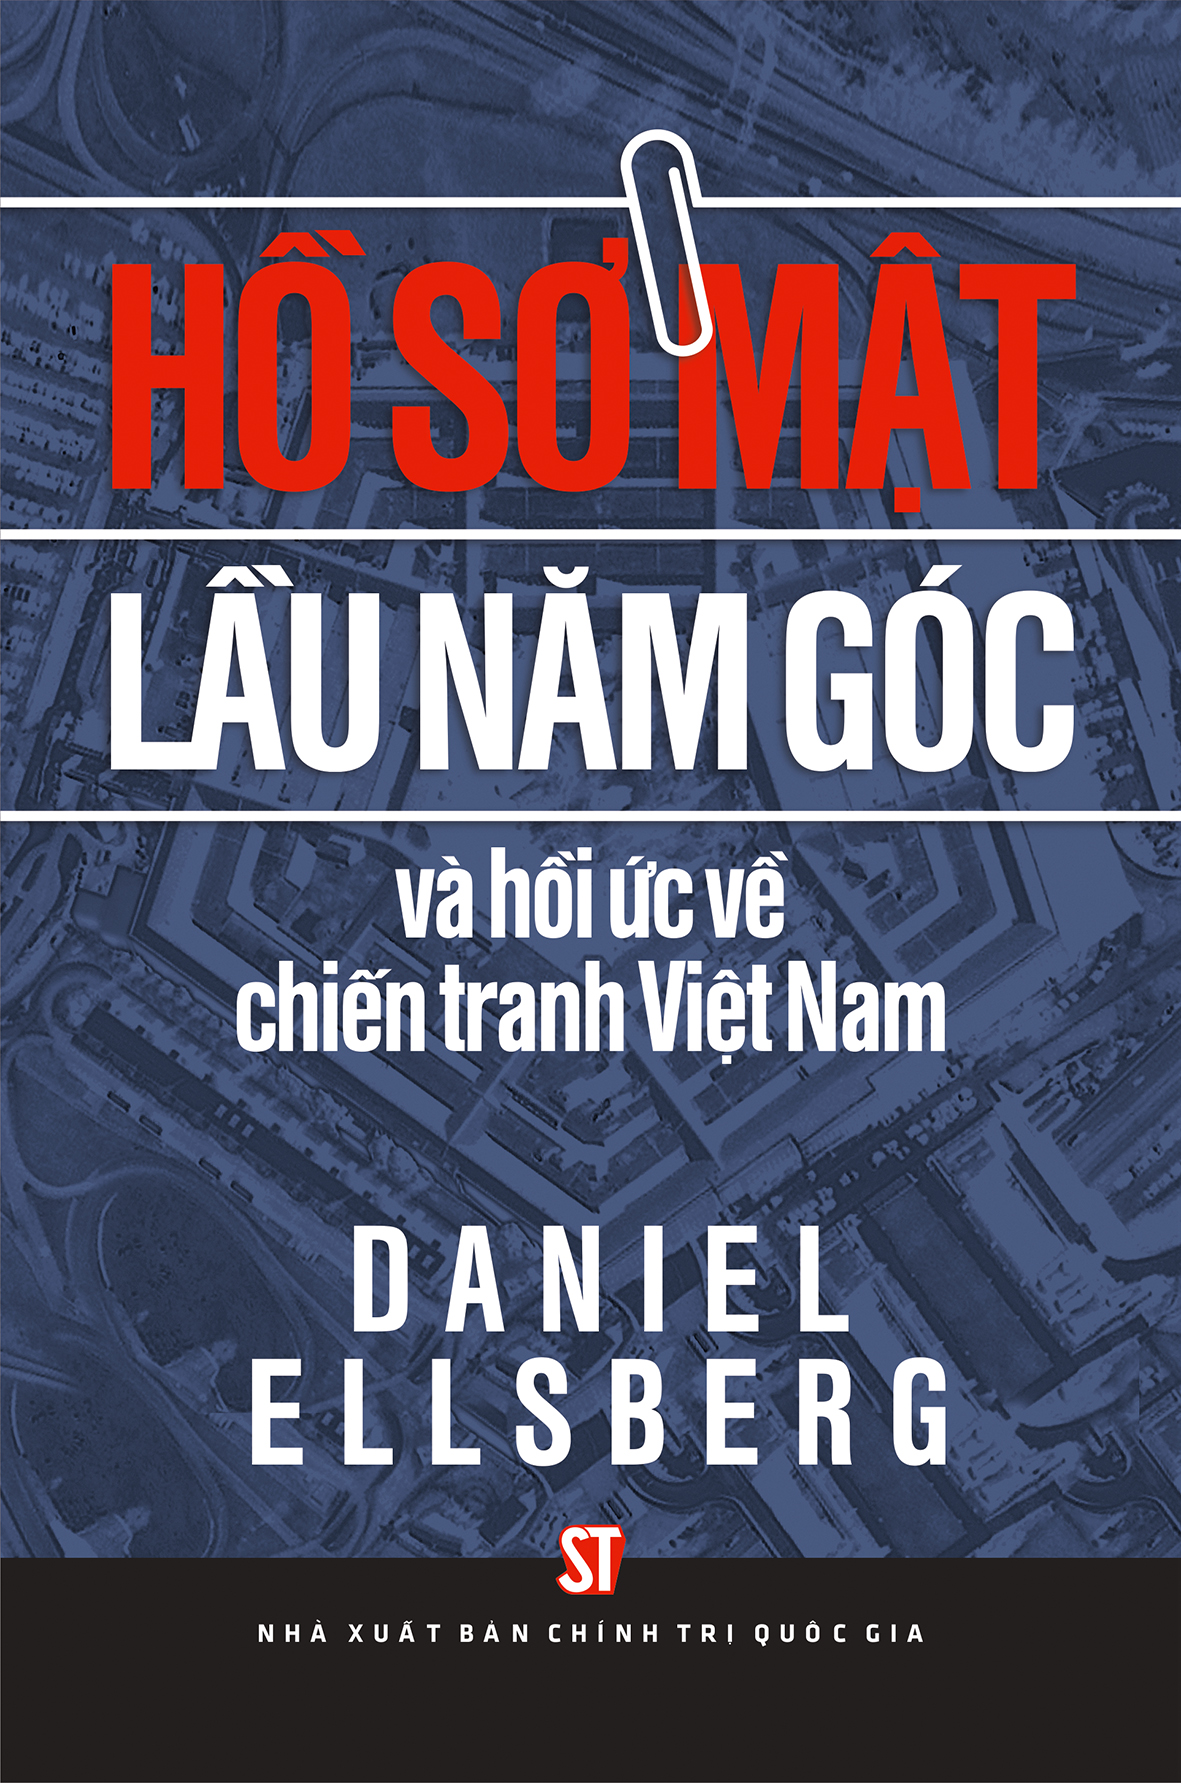 Hồ sơ mật lầu năm góc và hồi ức về chiến tranh Việt Nam (Sách tham khảo)